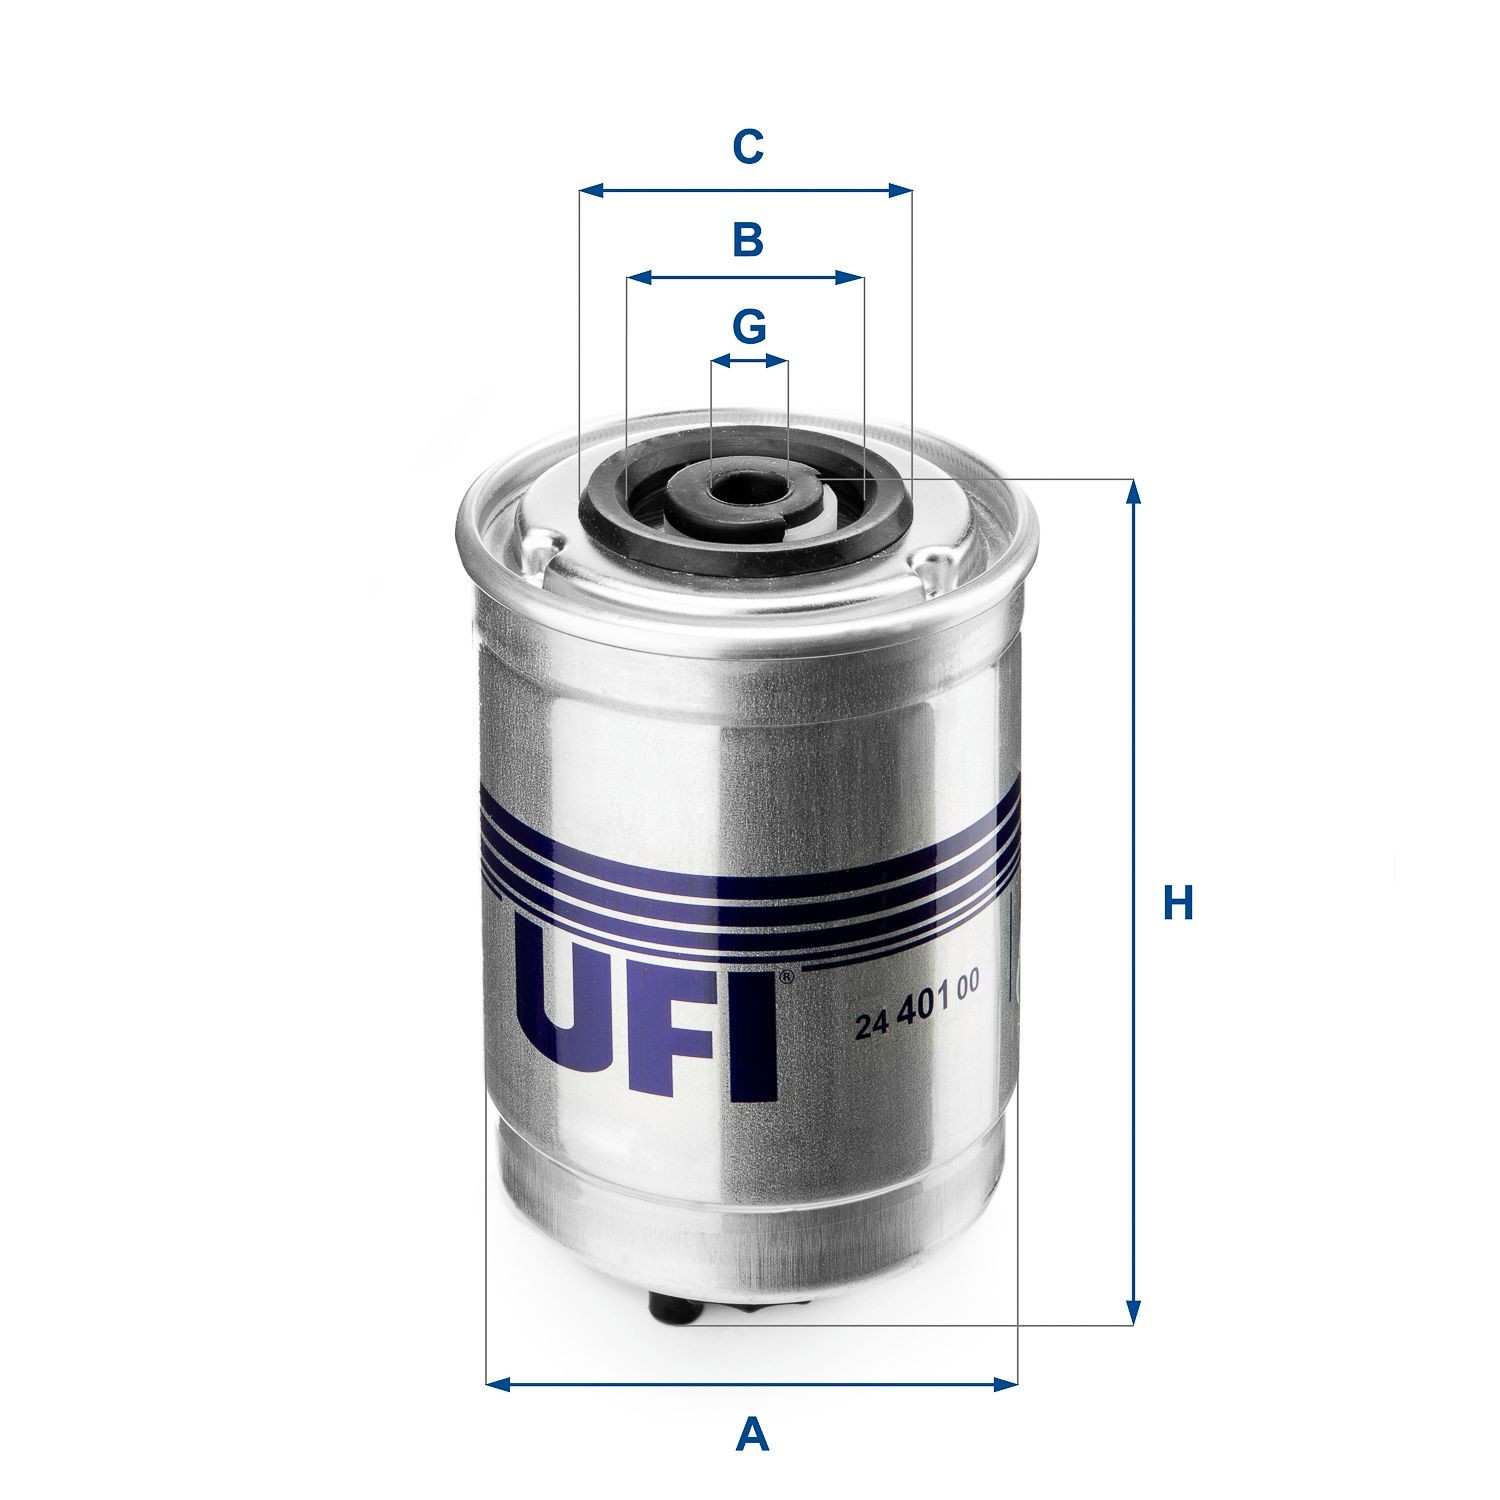 UFI 24.401.00 Fuel filter Filter Insert